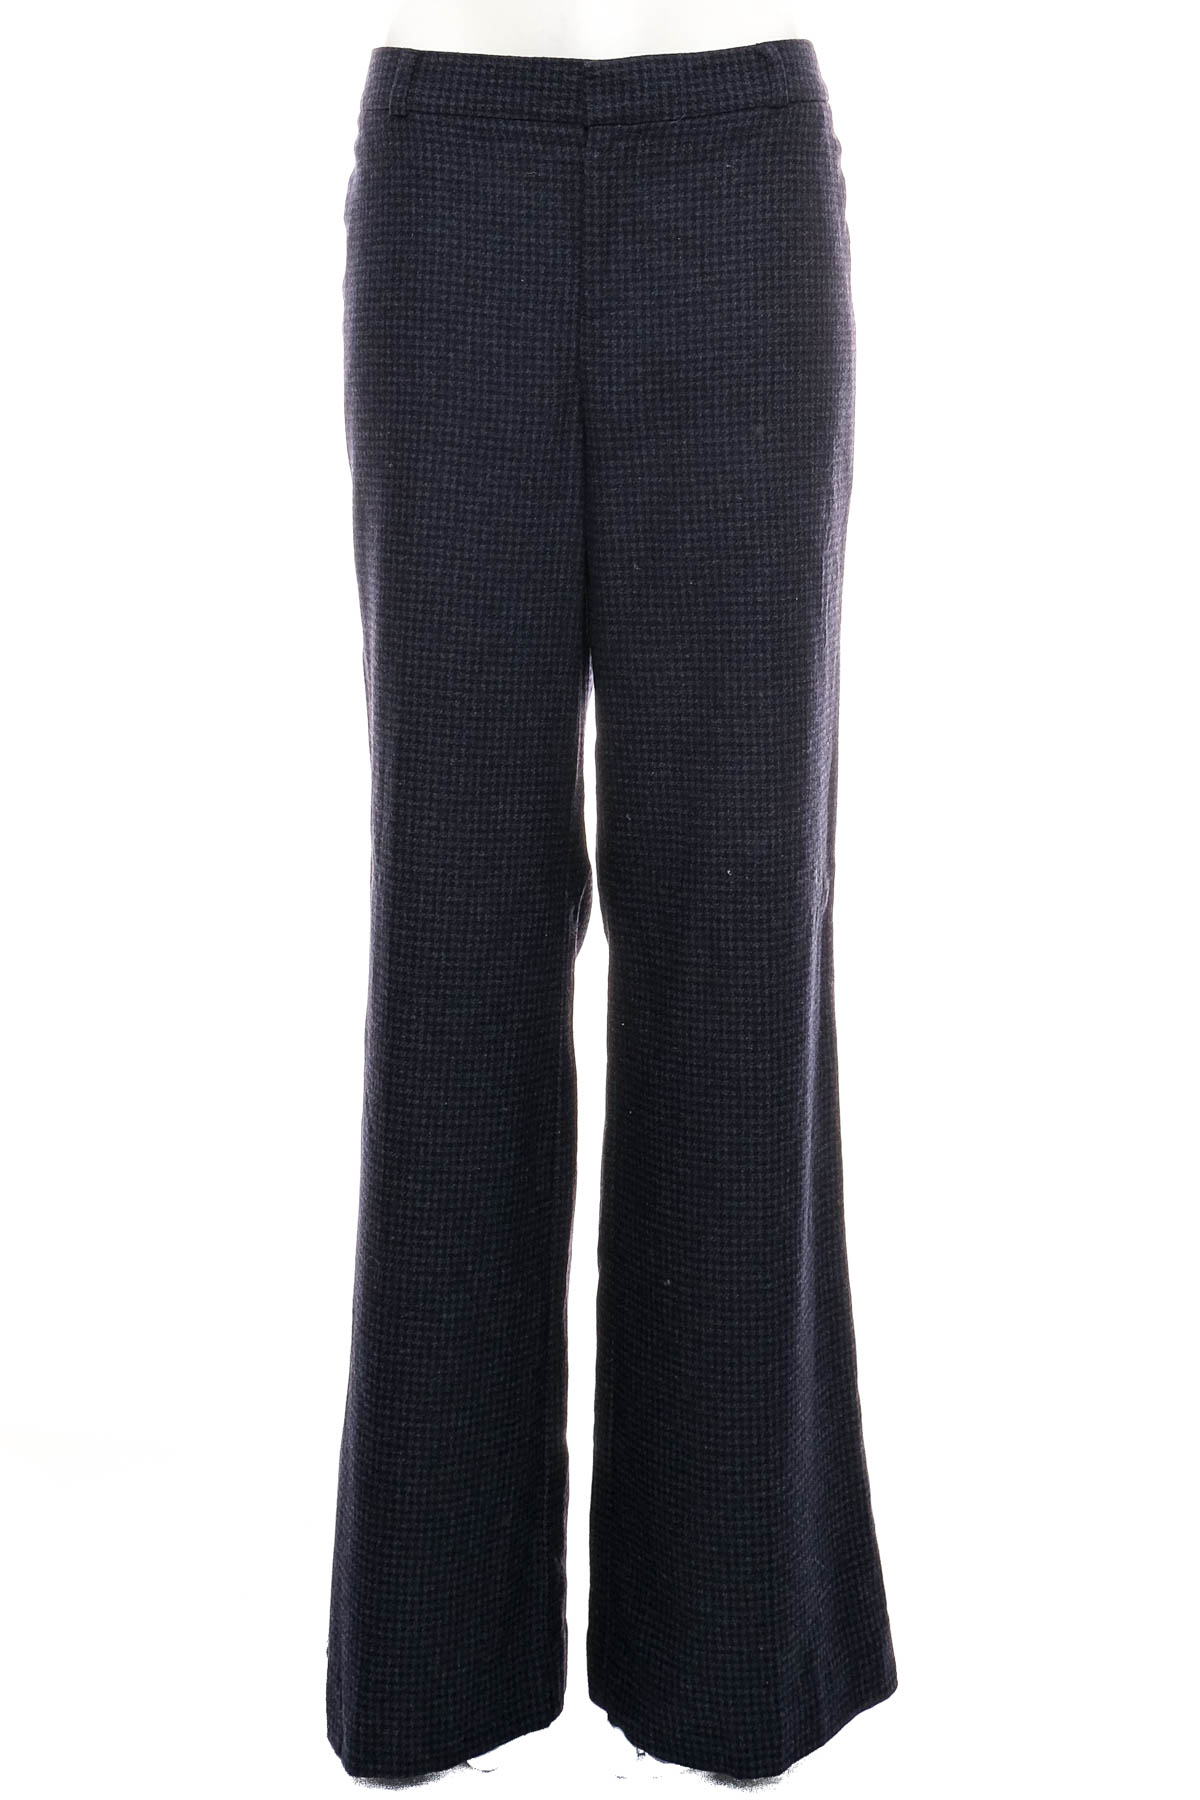 Women's trousers - BANANA REPUBLIC - 0